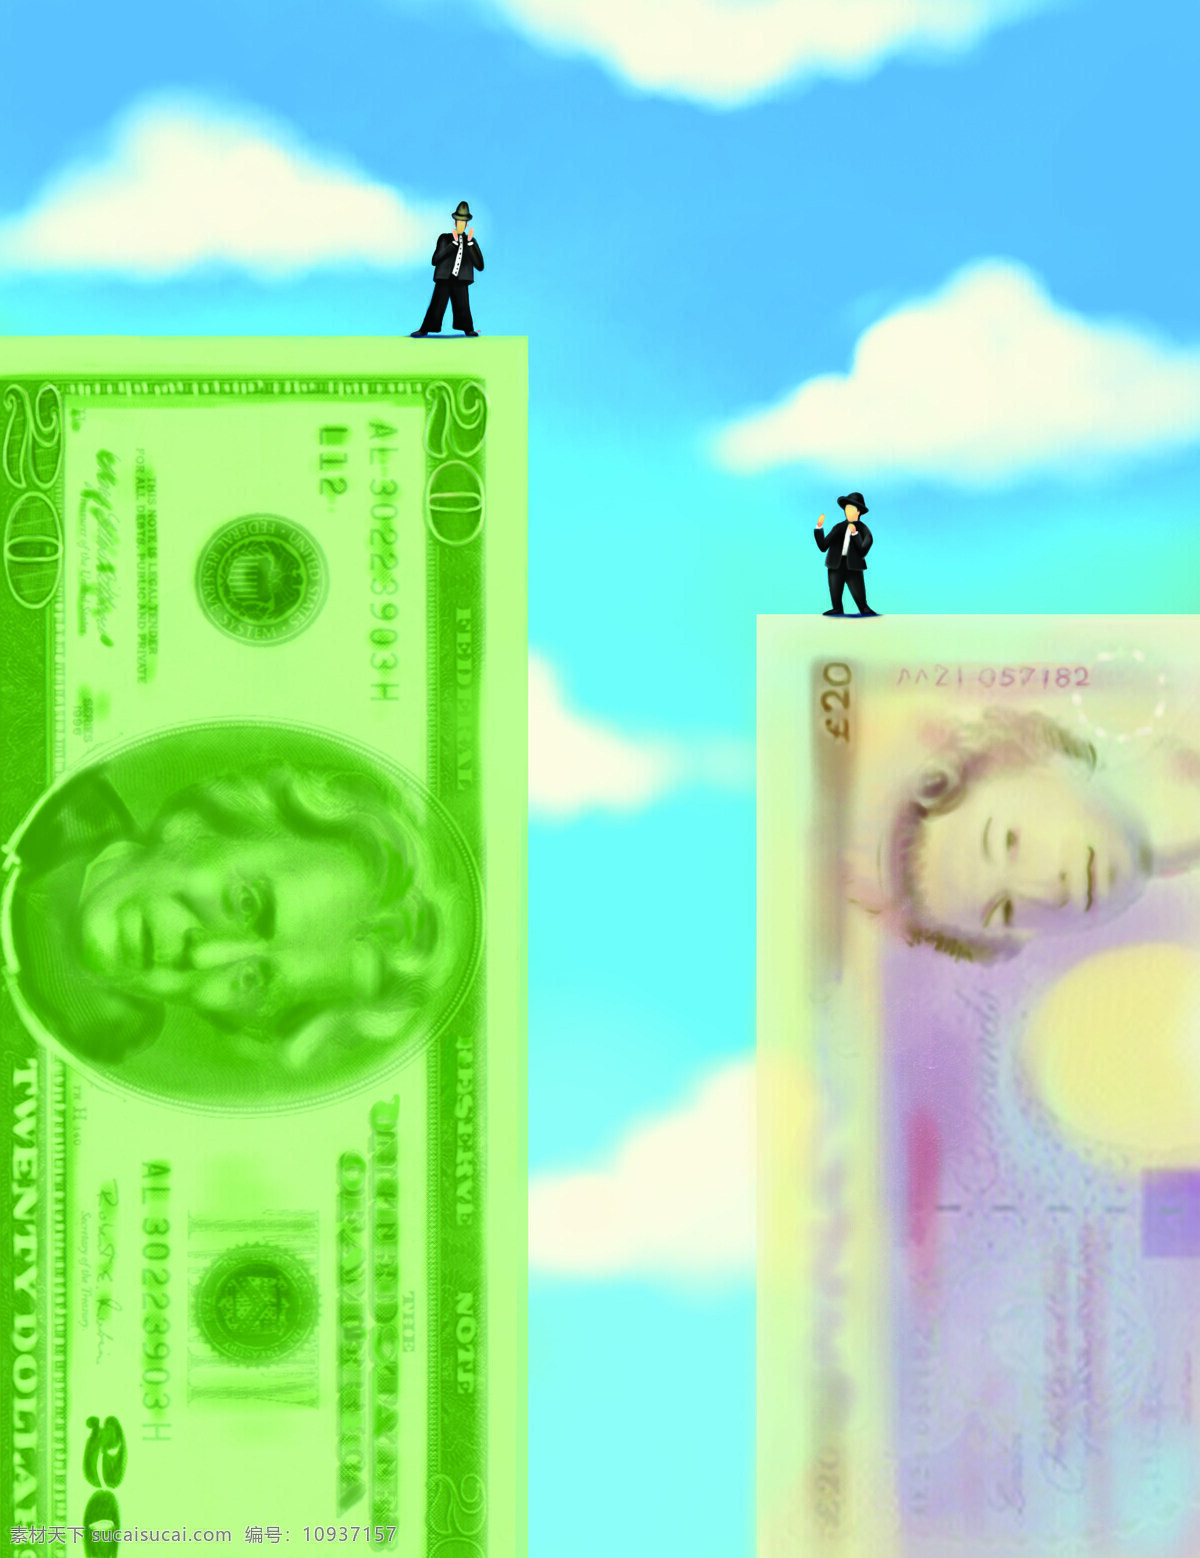 金融 货币 漫画 素材图片 商业 商务 贸易 商贸 钞票 美元 英磅 财富 人物 创意 抽象 金融插画 高清图片 其他类别 商务金融